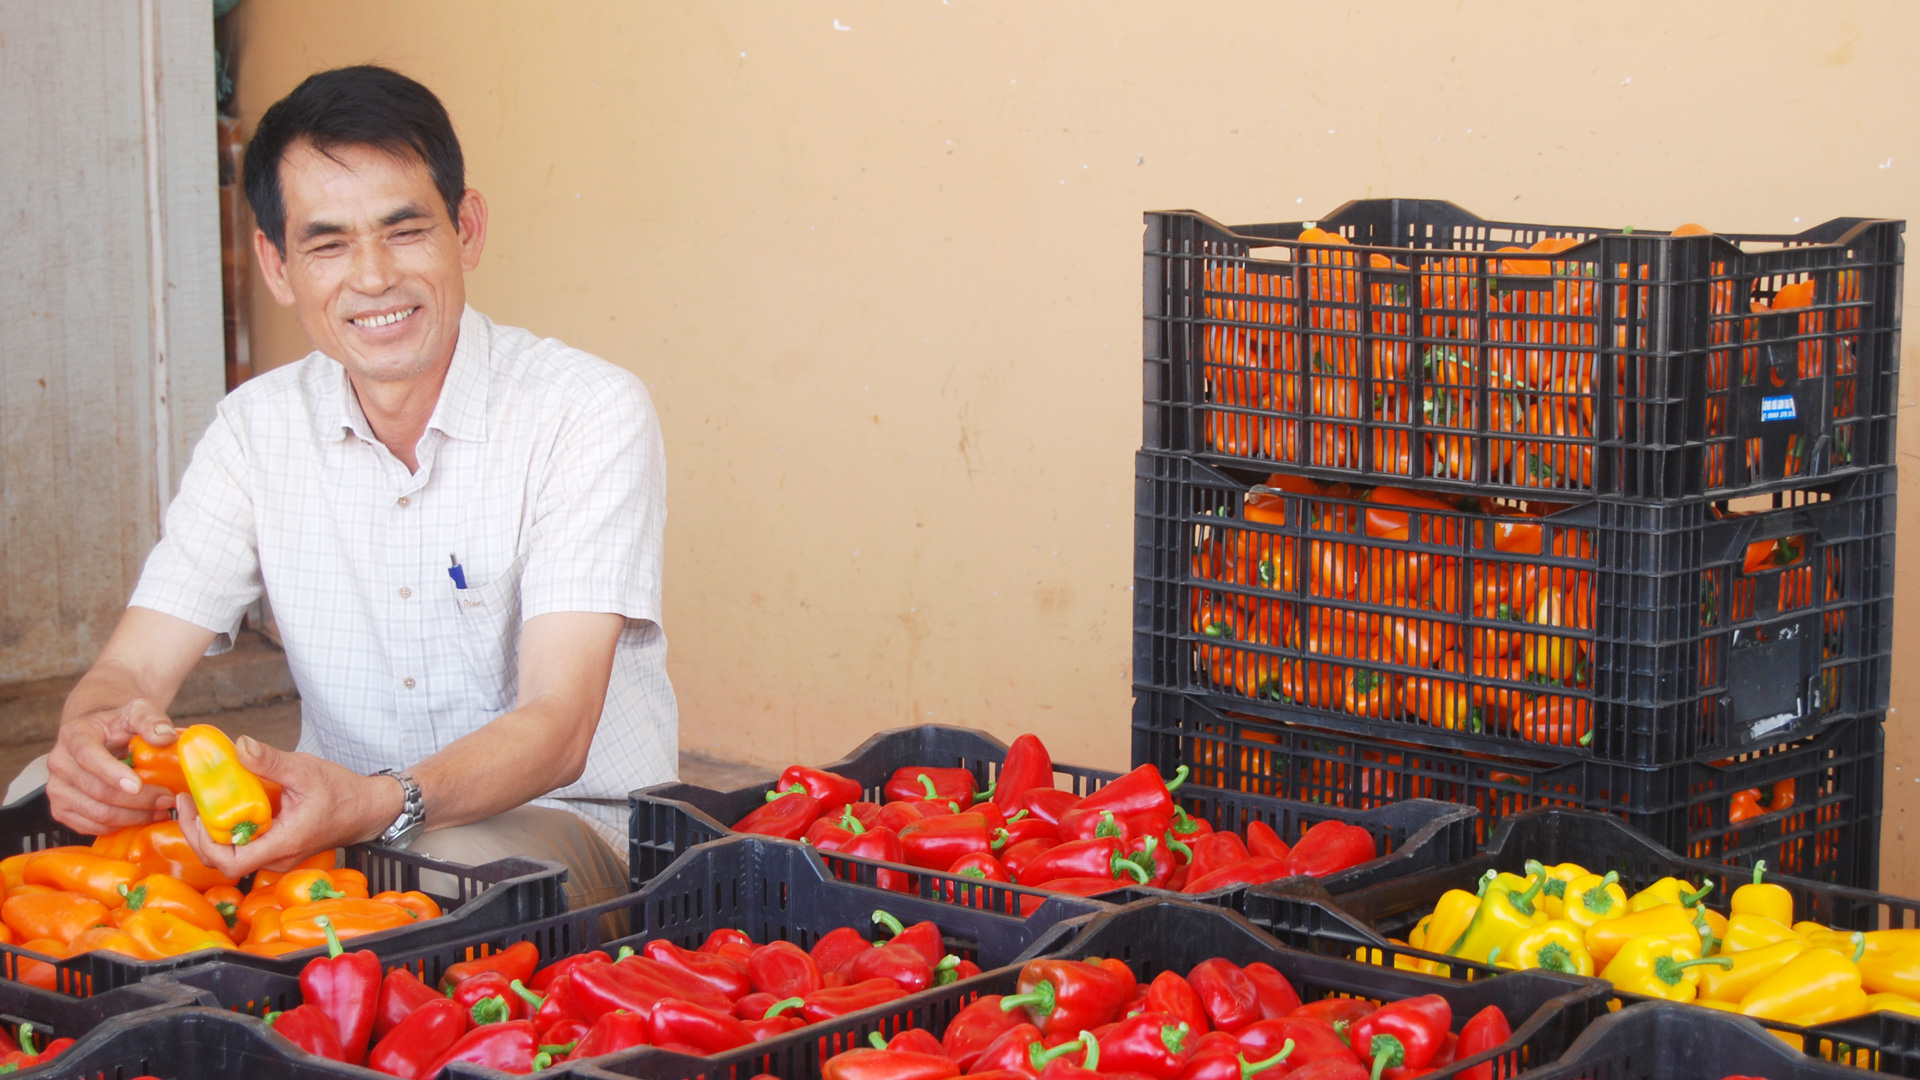 Liên kết sản xuất ớt chuông gắn với tiêu thụ theo hợp đồng, nông hộ thành viên Hợp tác xã Dịch vụ nông nghiệp tổng hợp An Phú, đạt lãi 200-250 triệu đồng/1.000 m2/năm